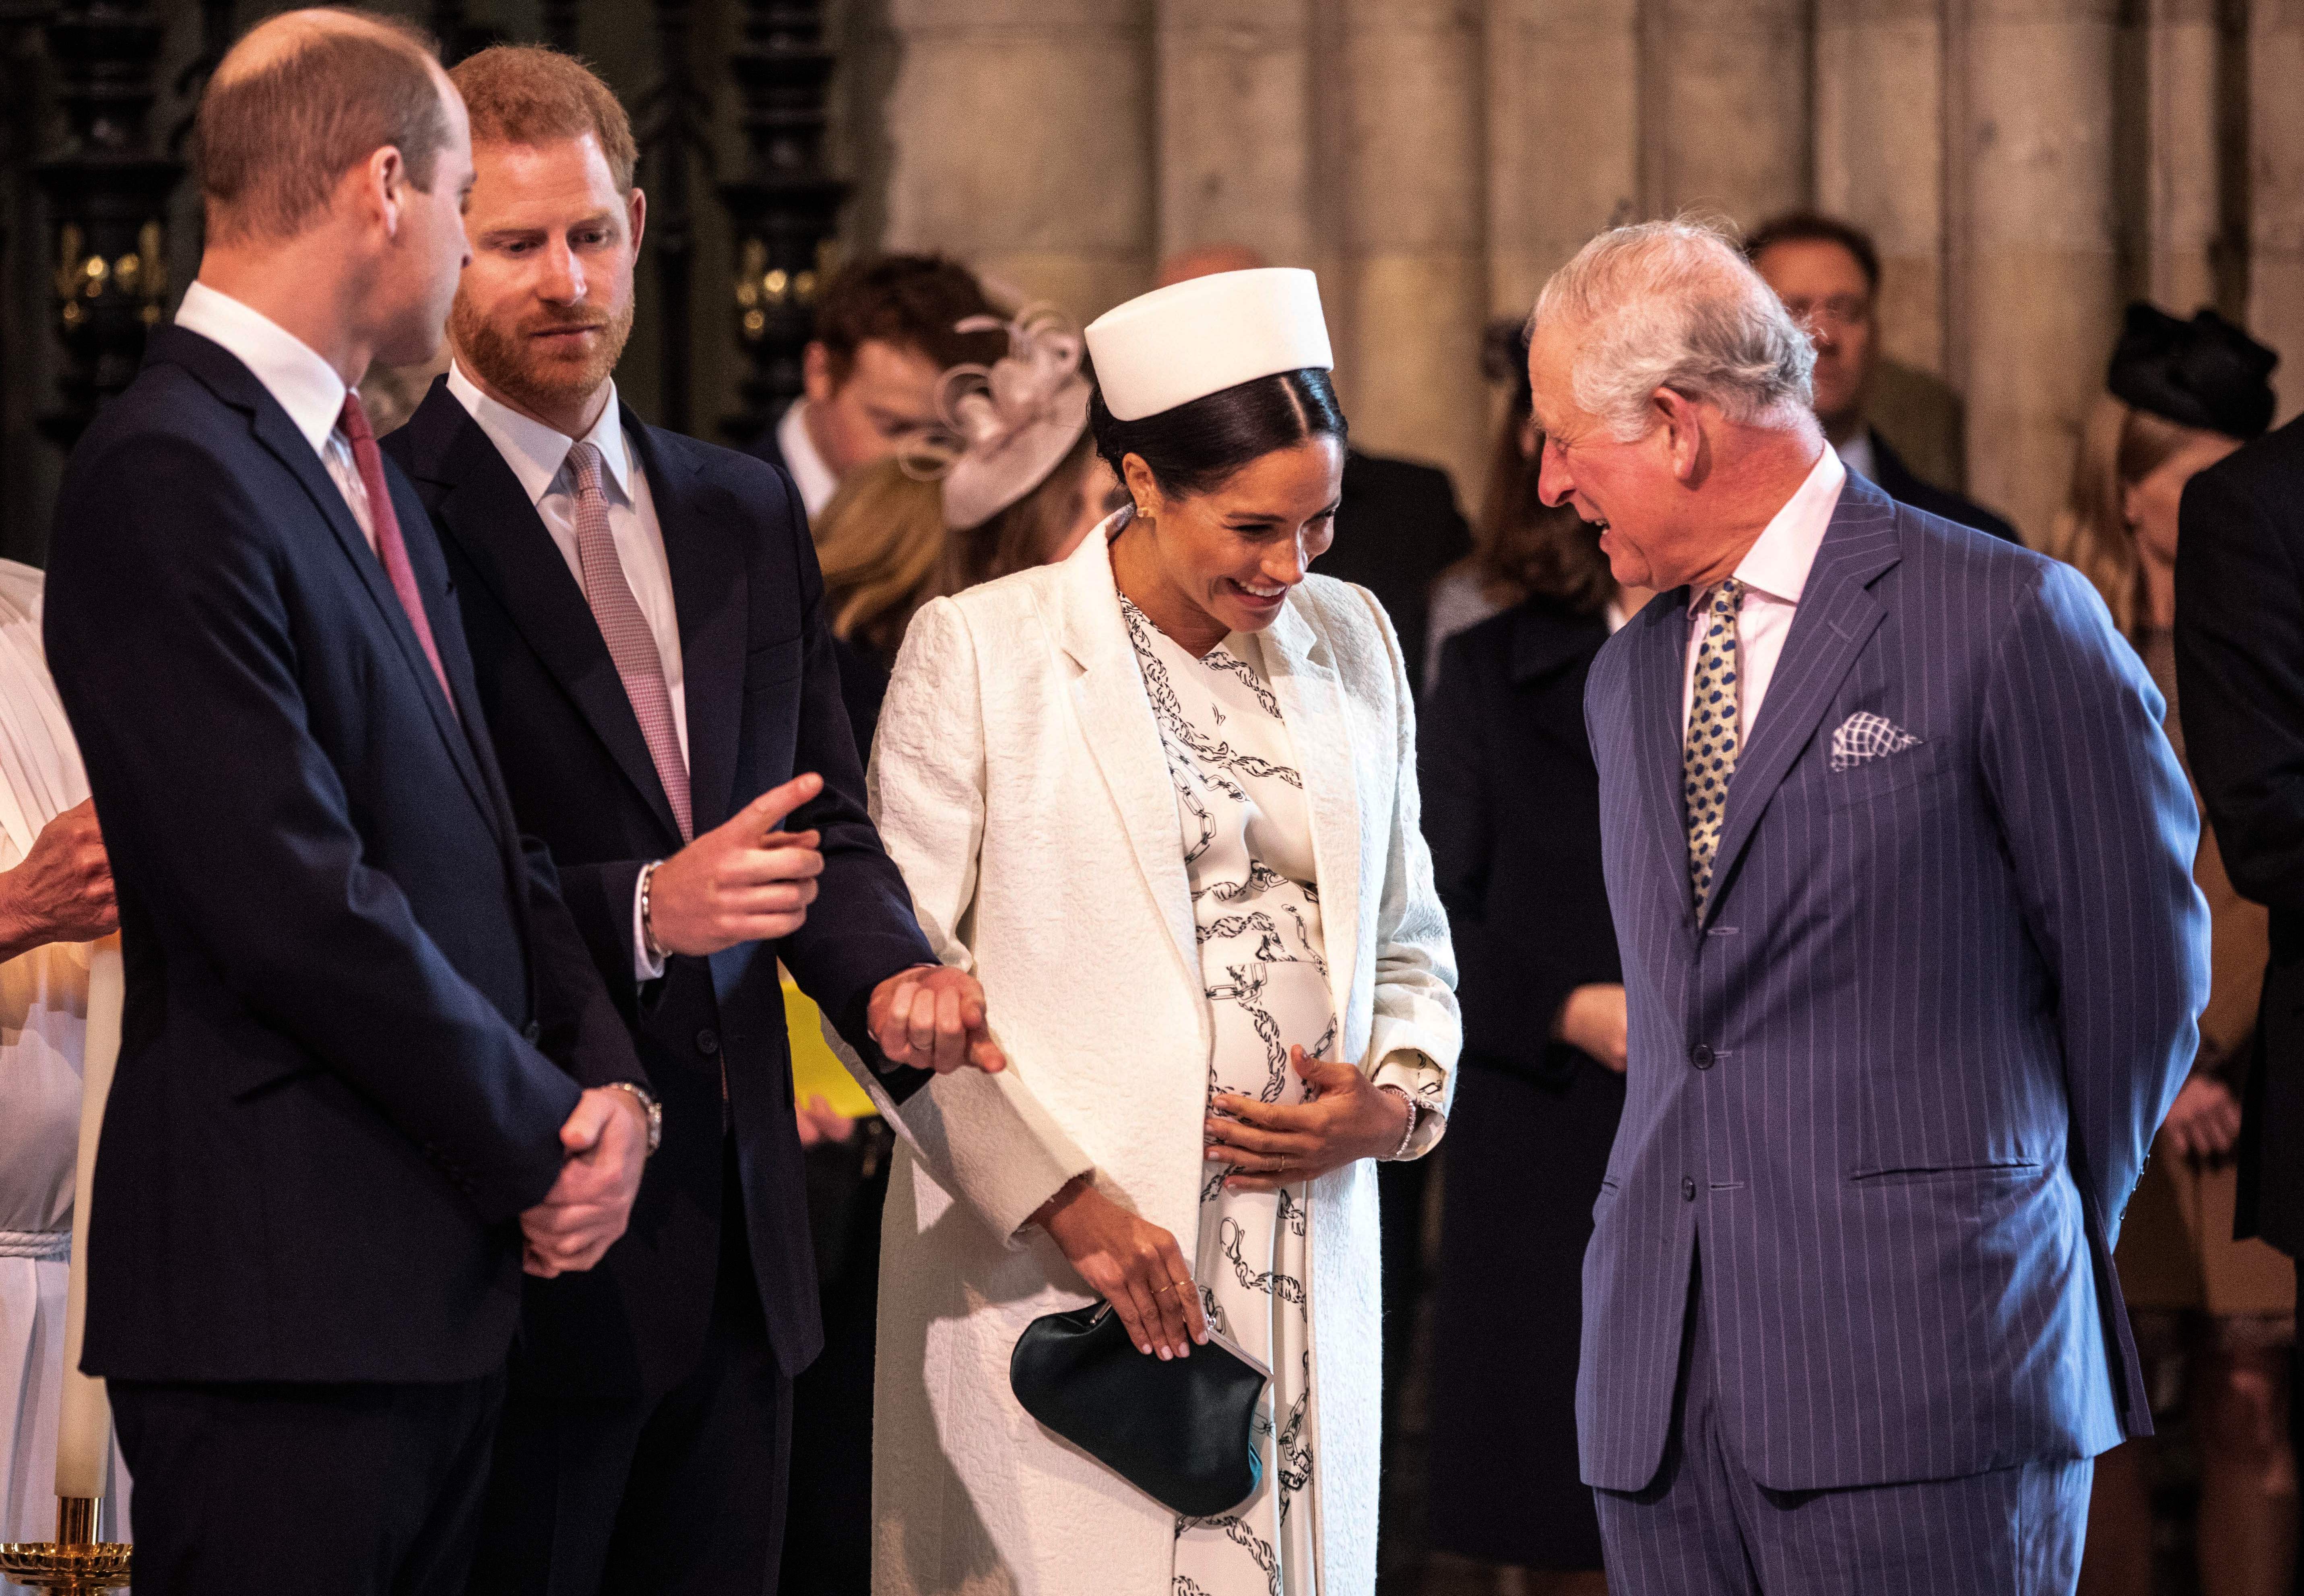 Meghan Markle riéndose con el Príncipe Charles mientras el Prínci0pe William se relaciona con su hermano, el Príncipe Harry, durante el servicio del Día de la Commonwealth en la Abadía de Westminster el 11 de marzo de 2019 en Londres. / Foto: Getty Images